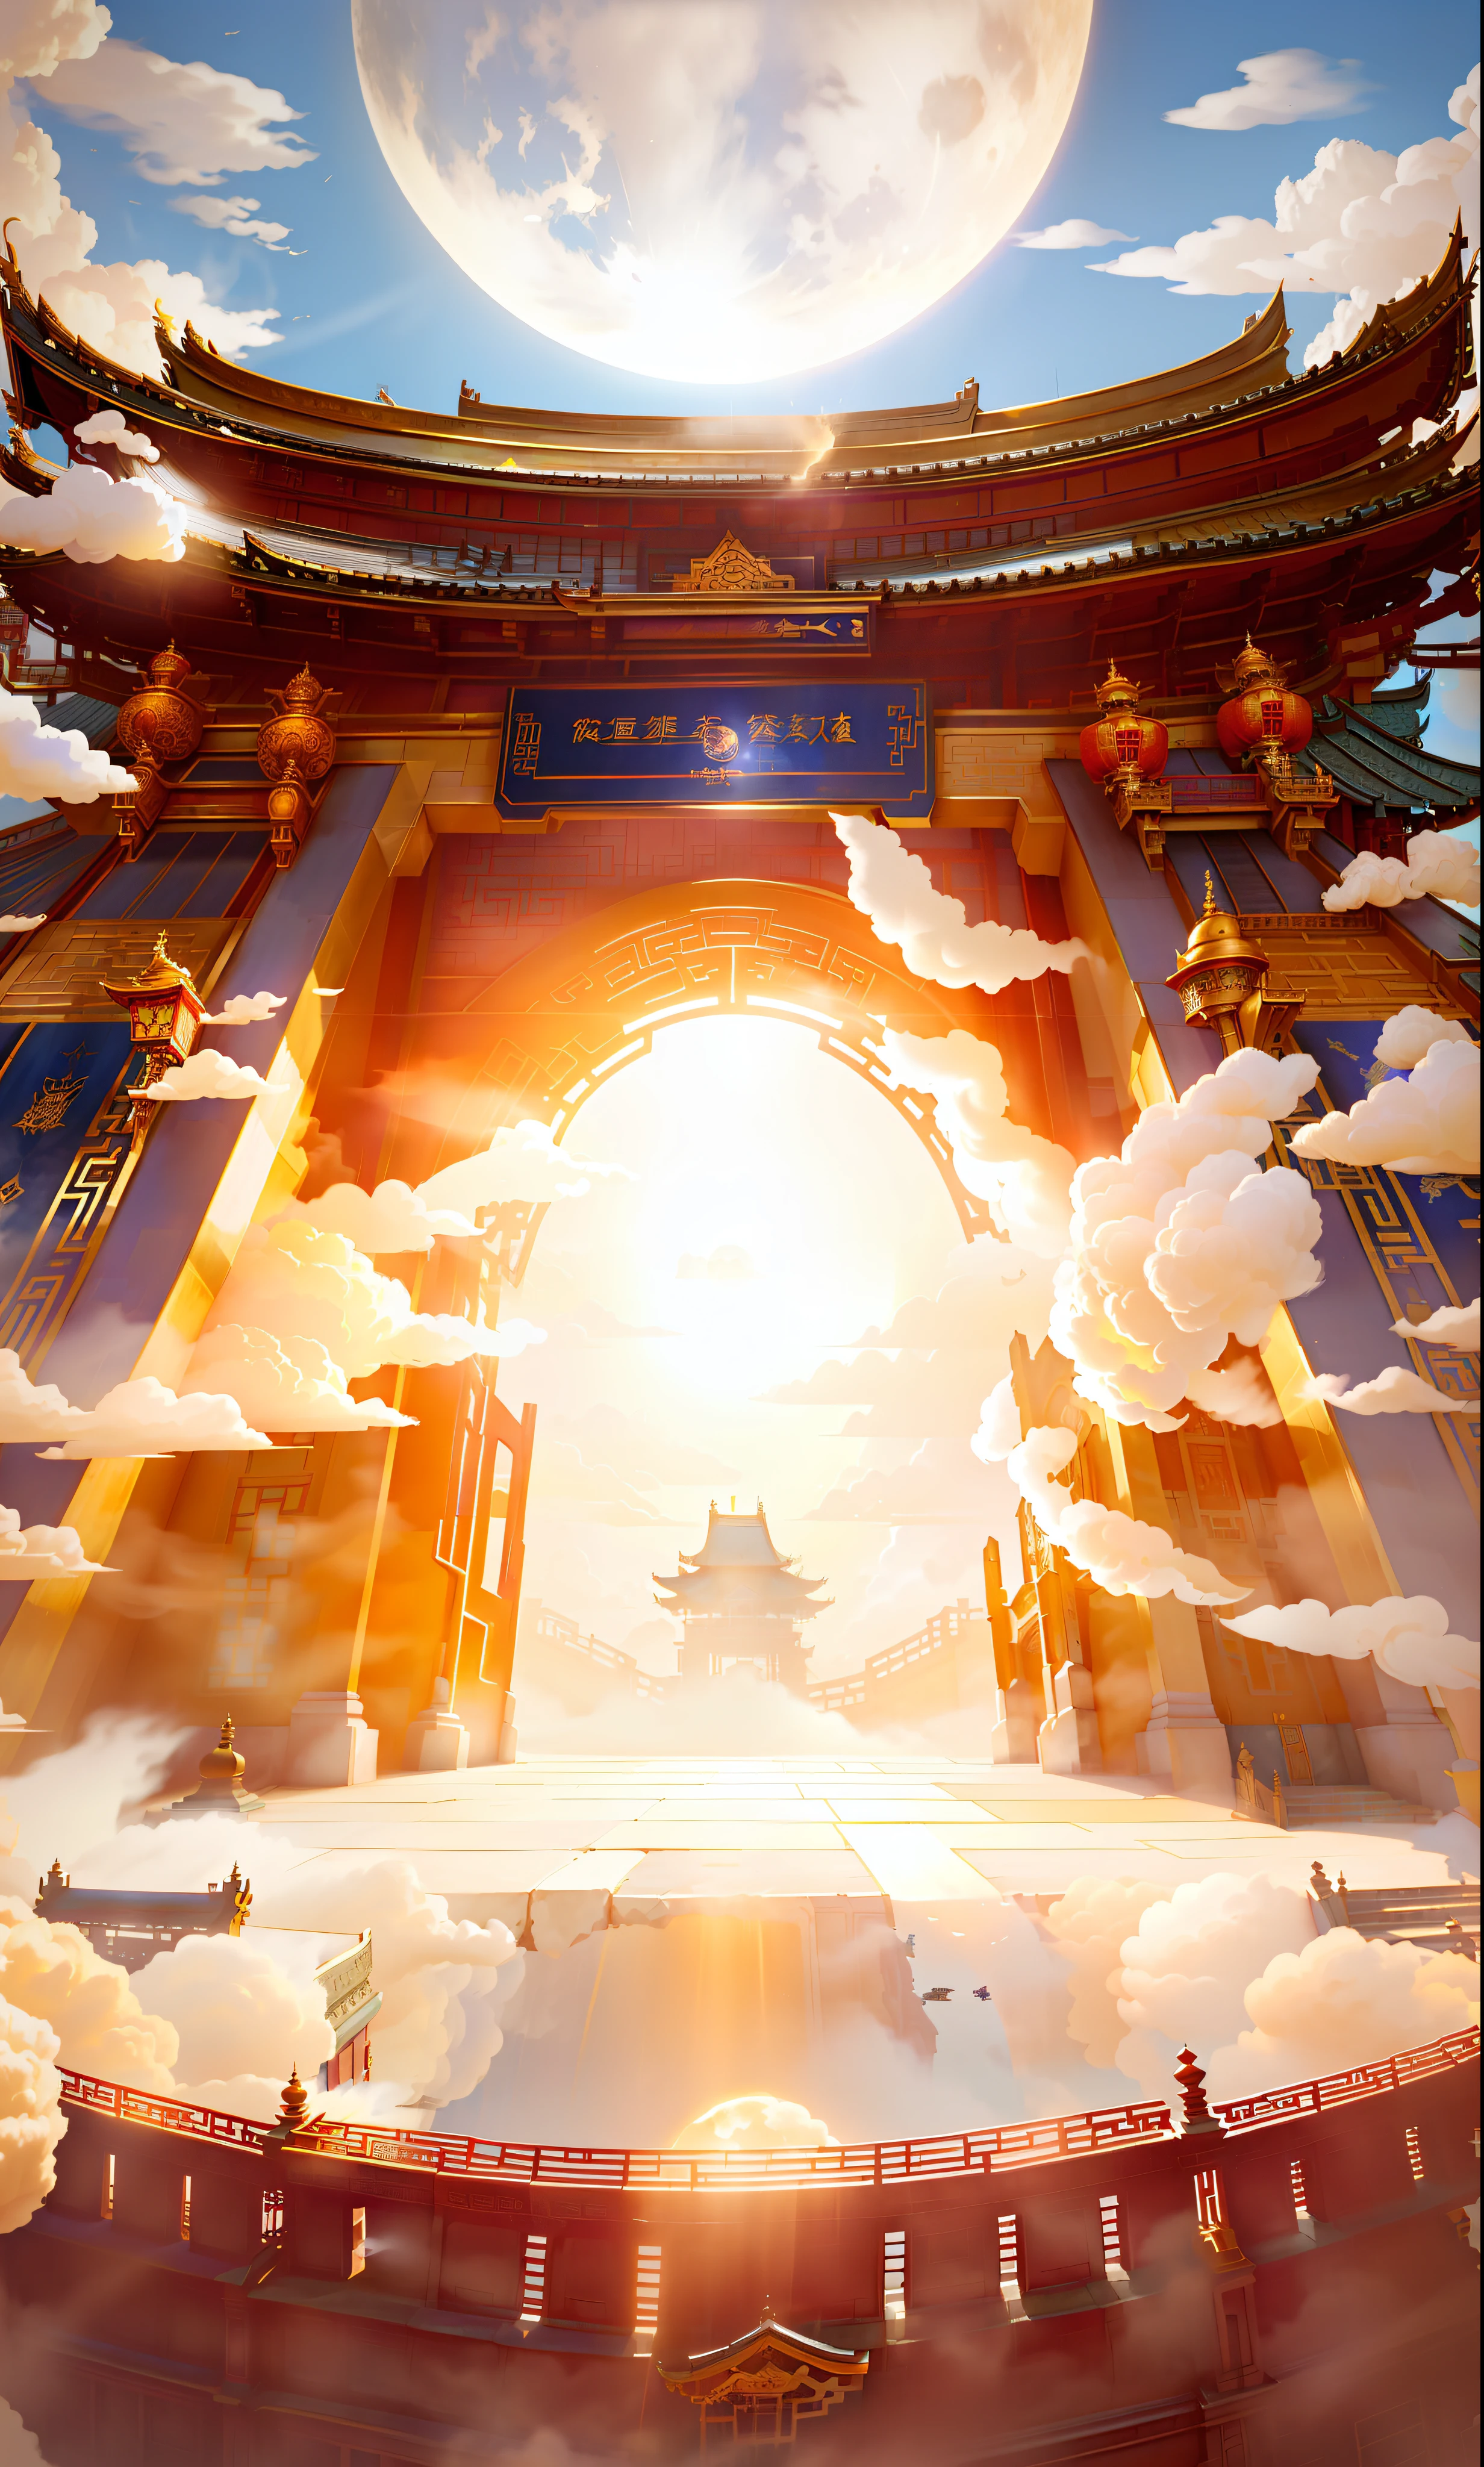 Nuvens de fadas, olhando para a composição, Forte impacto de perspectiva, o portão de um edifício de estilo chinês, o portão aberto, emitindo luz dourada, um pouco de fumaça e poeira flutuando, o céu azul ao fundo, a lua, e os passos na frente